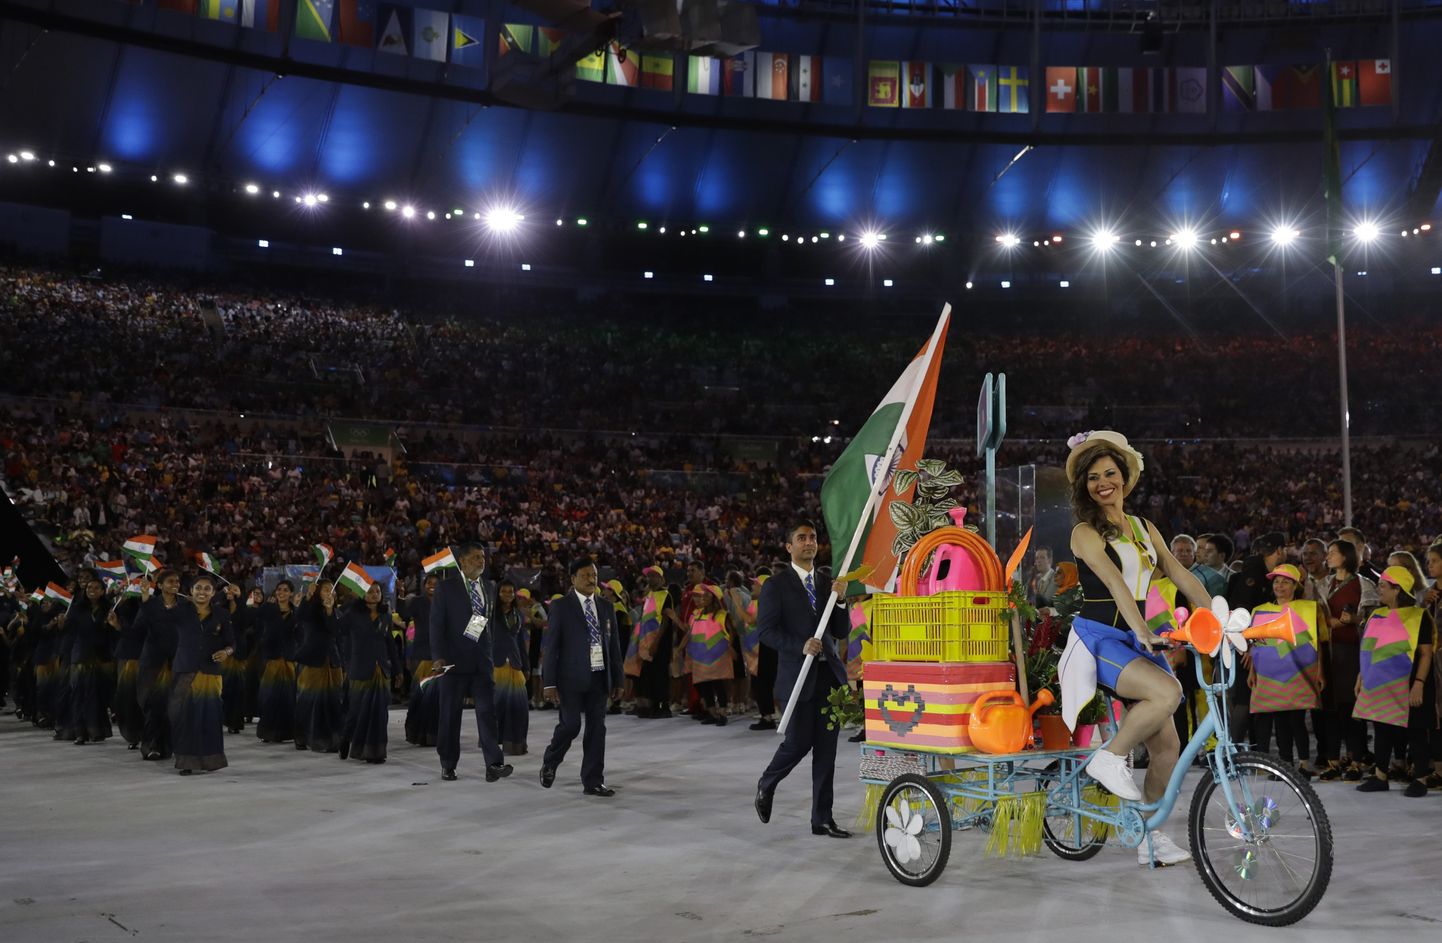 India delegatsioon sisenemas Maracana staadionile 2016. olümpiamängude avatseremoonial. Kas peagi võib see juhtuda ka nende enda kodustaadionil?